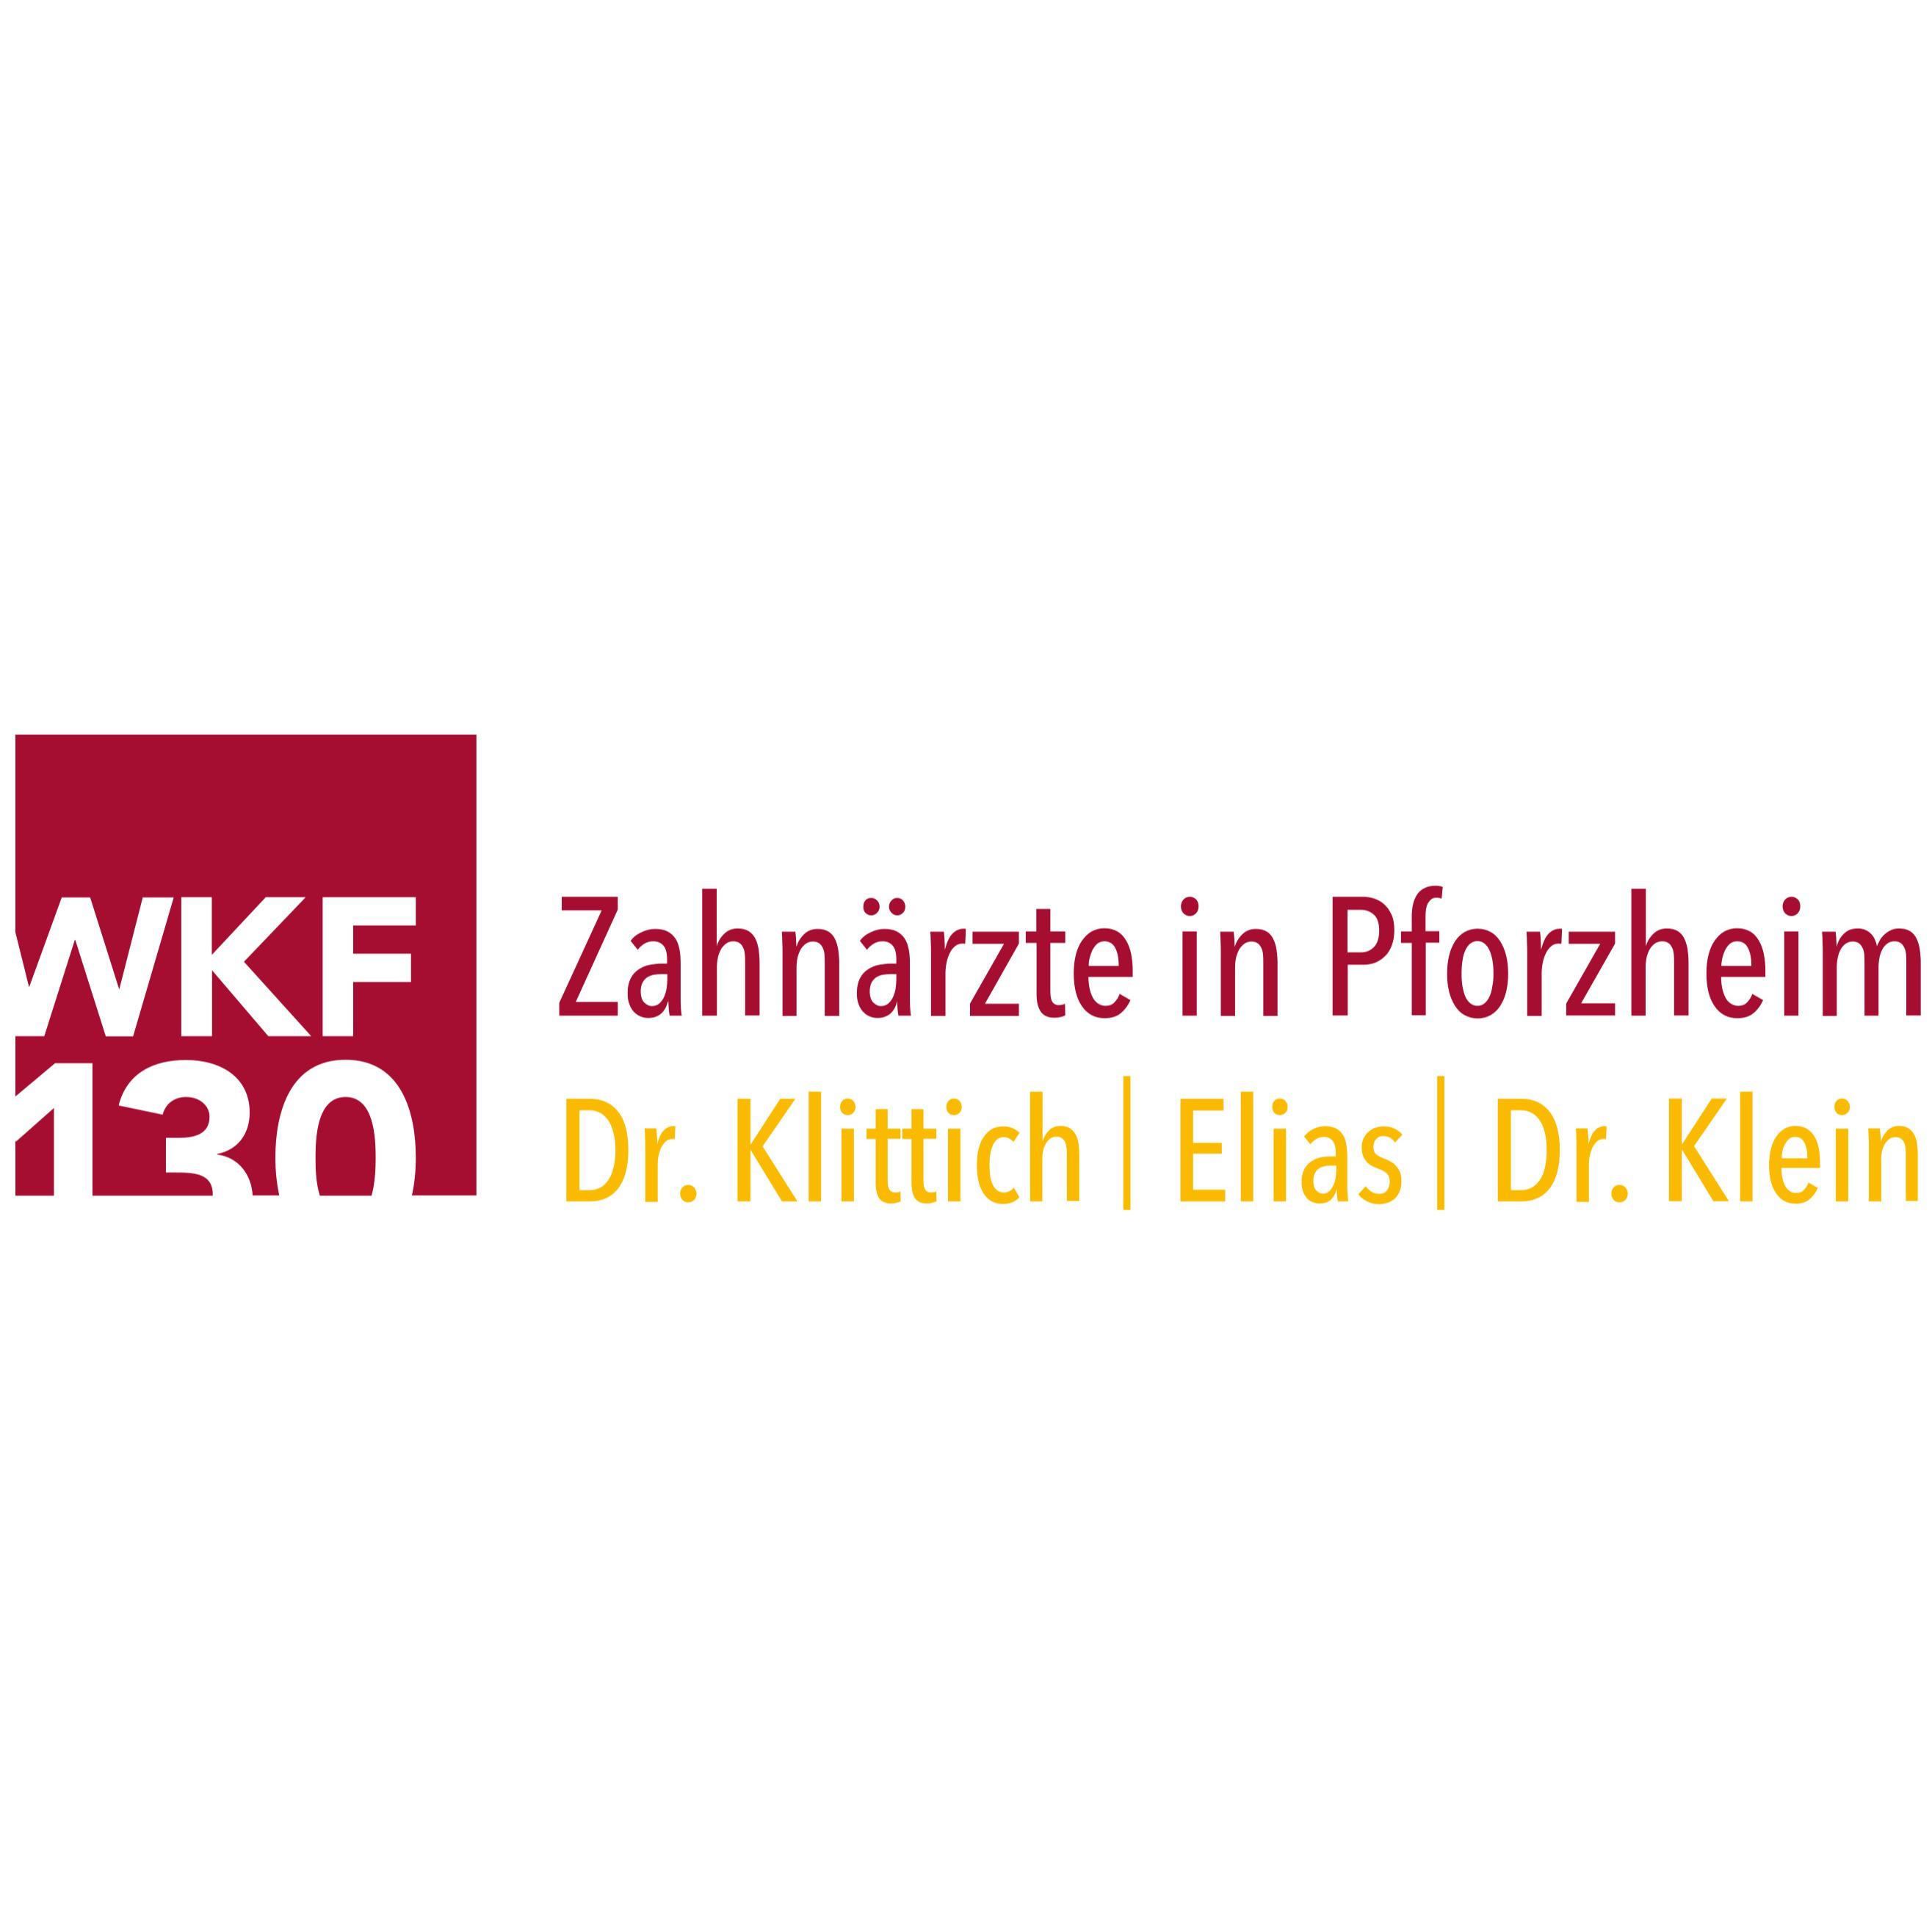 Zahnärzte in Pforzheim - WKF 130 in Pforzheim - Logo